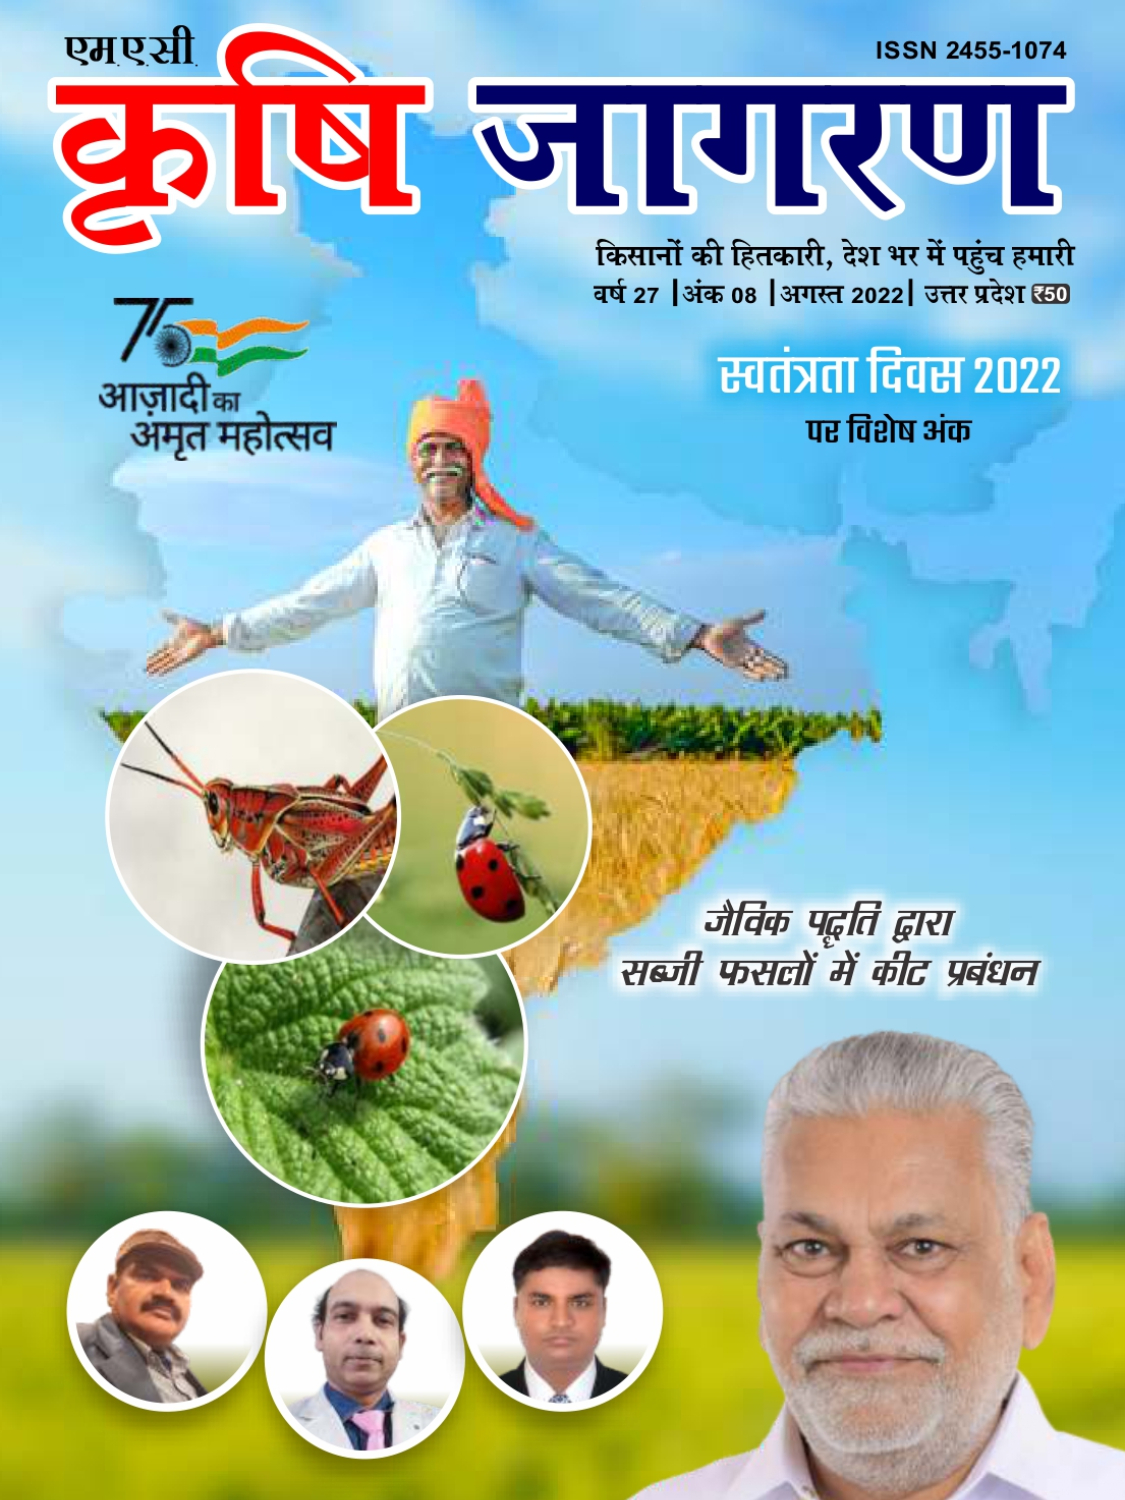 कृषि जागरण हिंदी (अगस्त 2022 संस्करण)